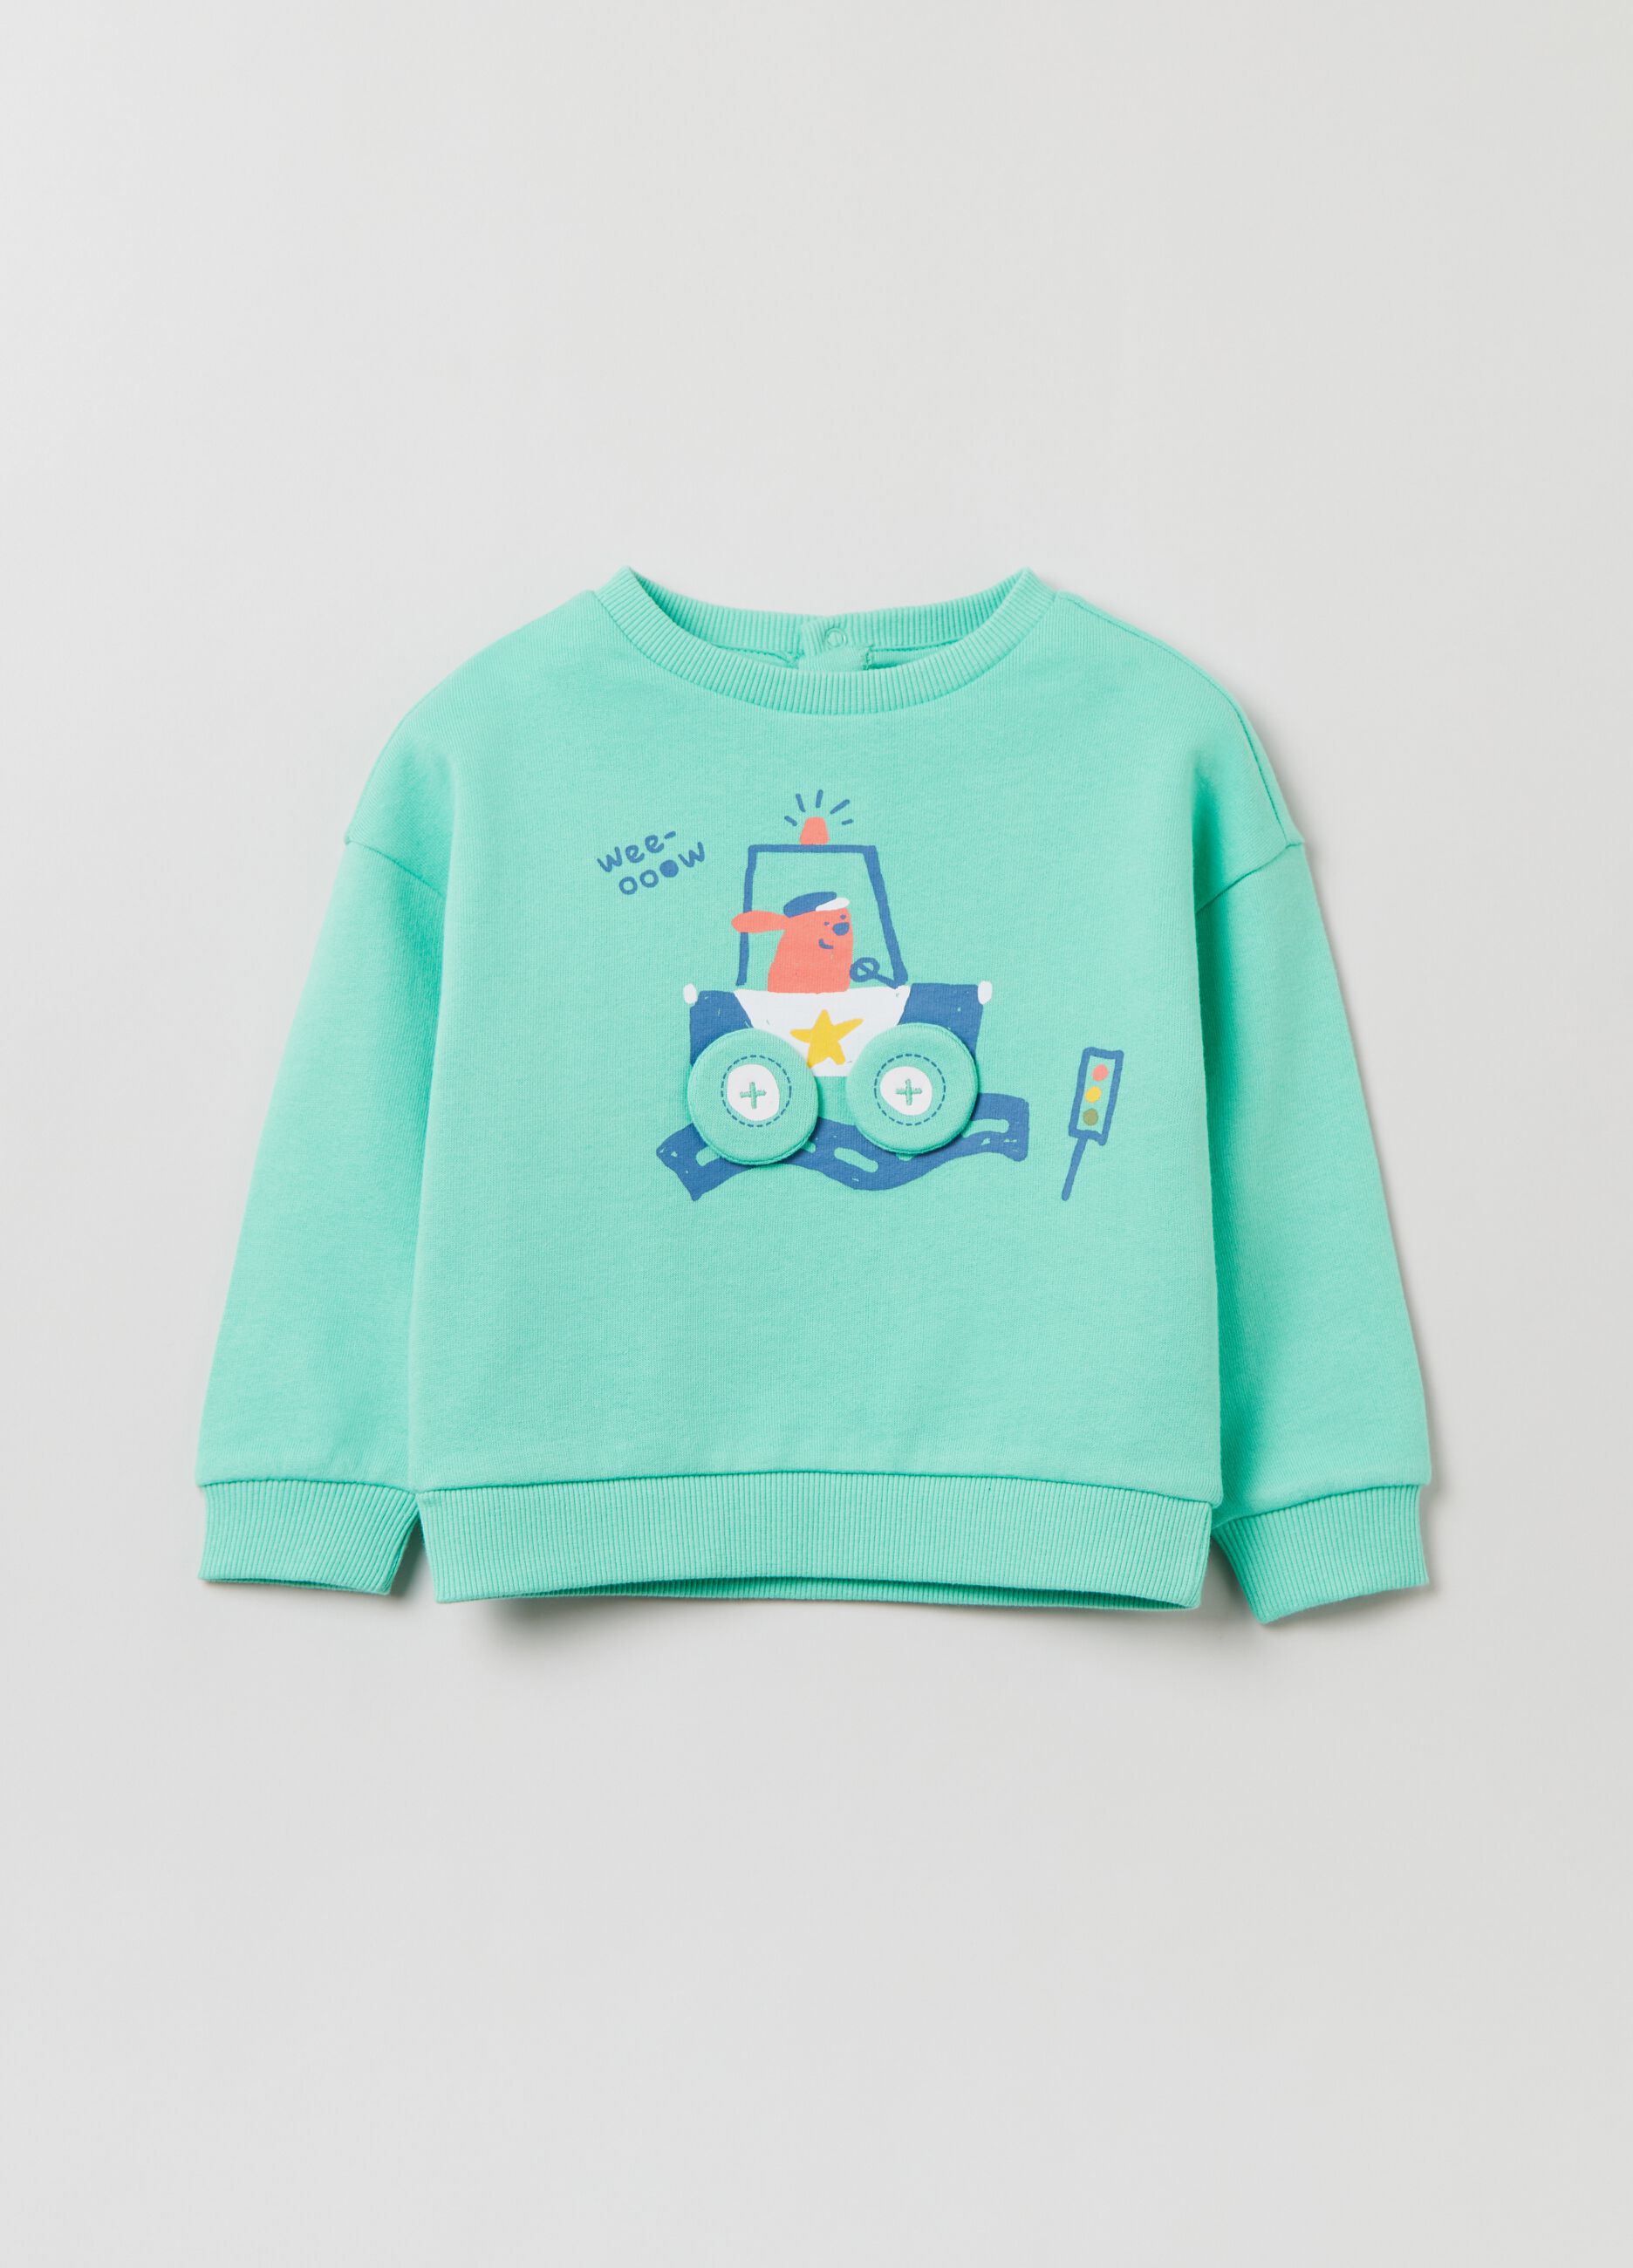 Lightweight sweatshirt with puppy print.